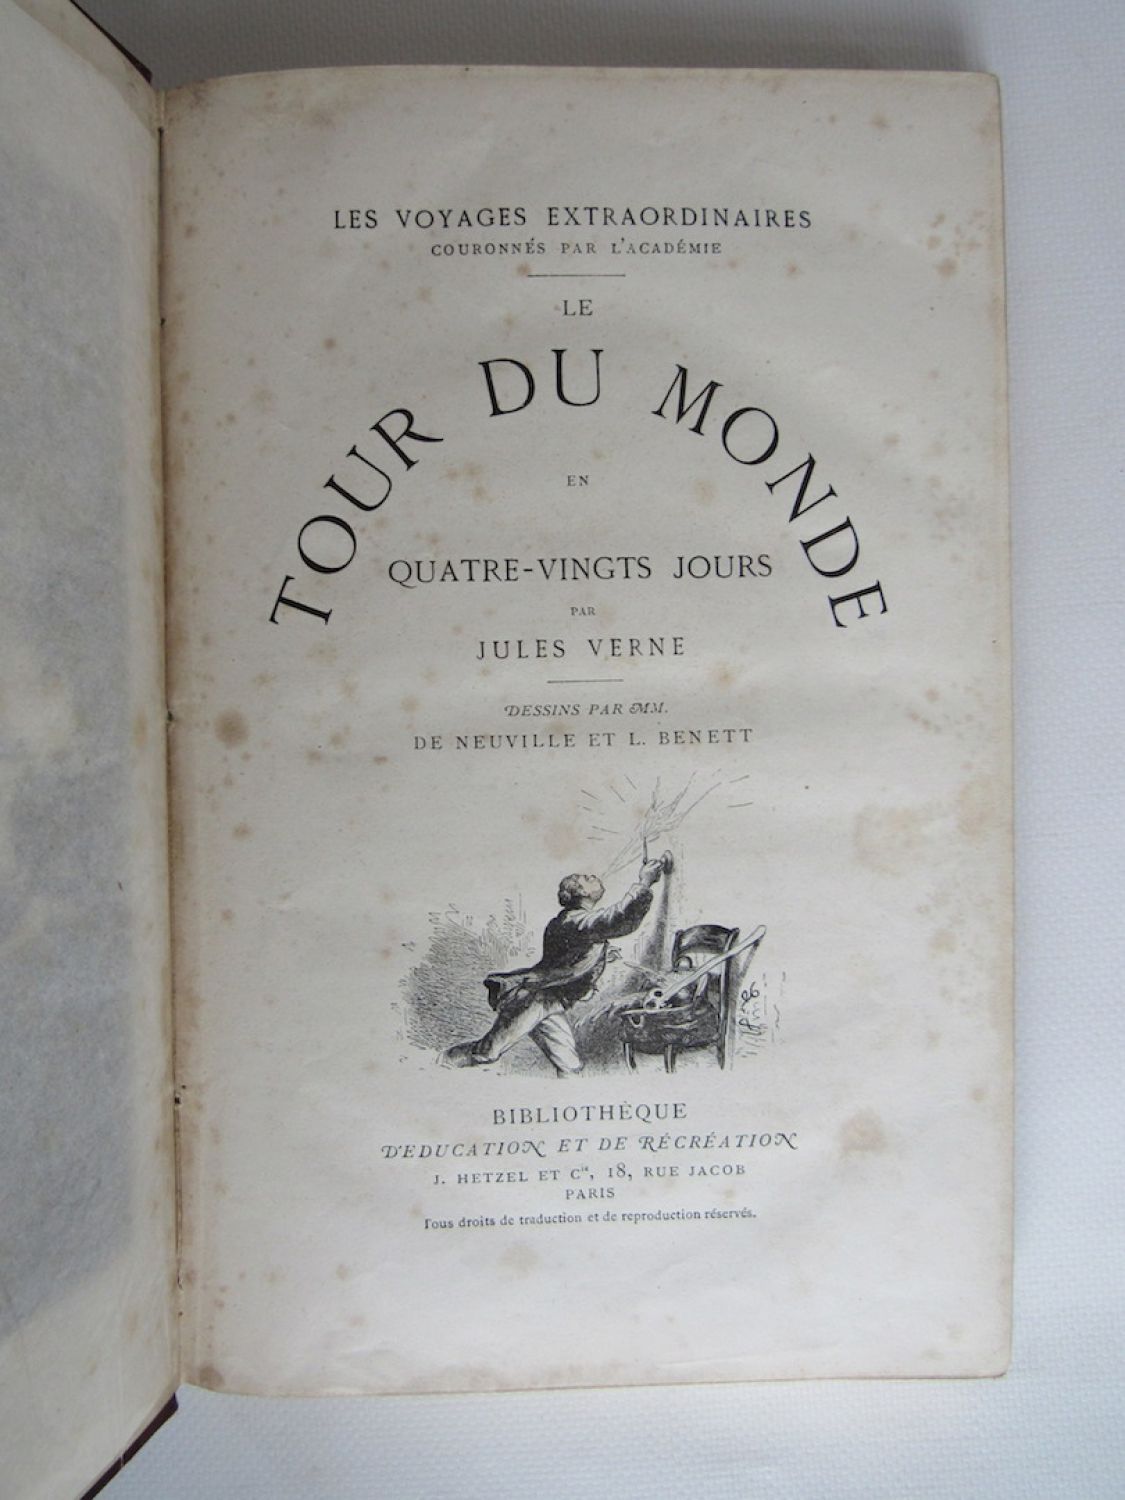 Le Tour du monde en 80 jours - Audiobook - Jules Verne - Storytel